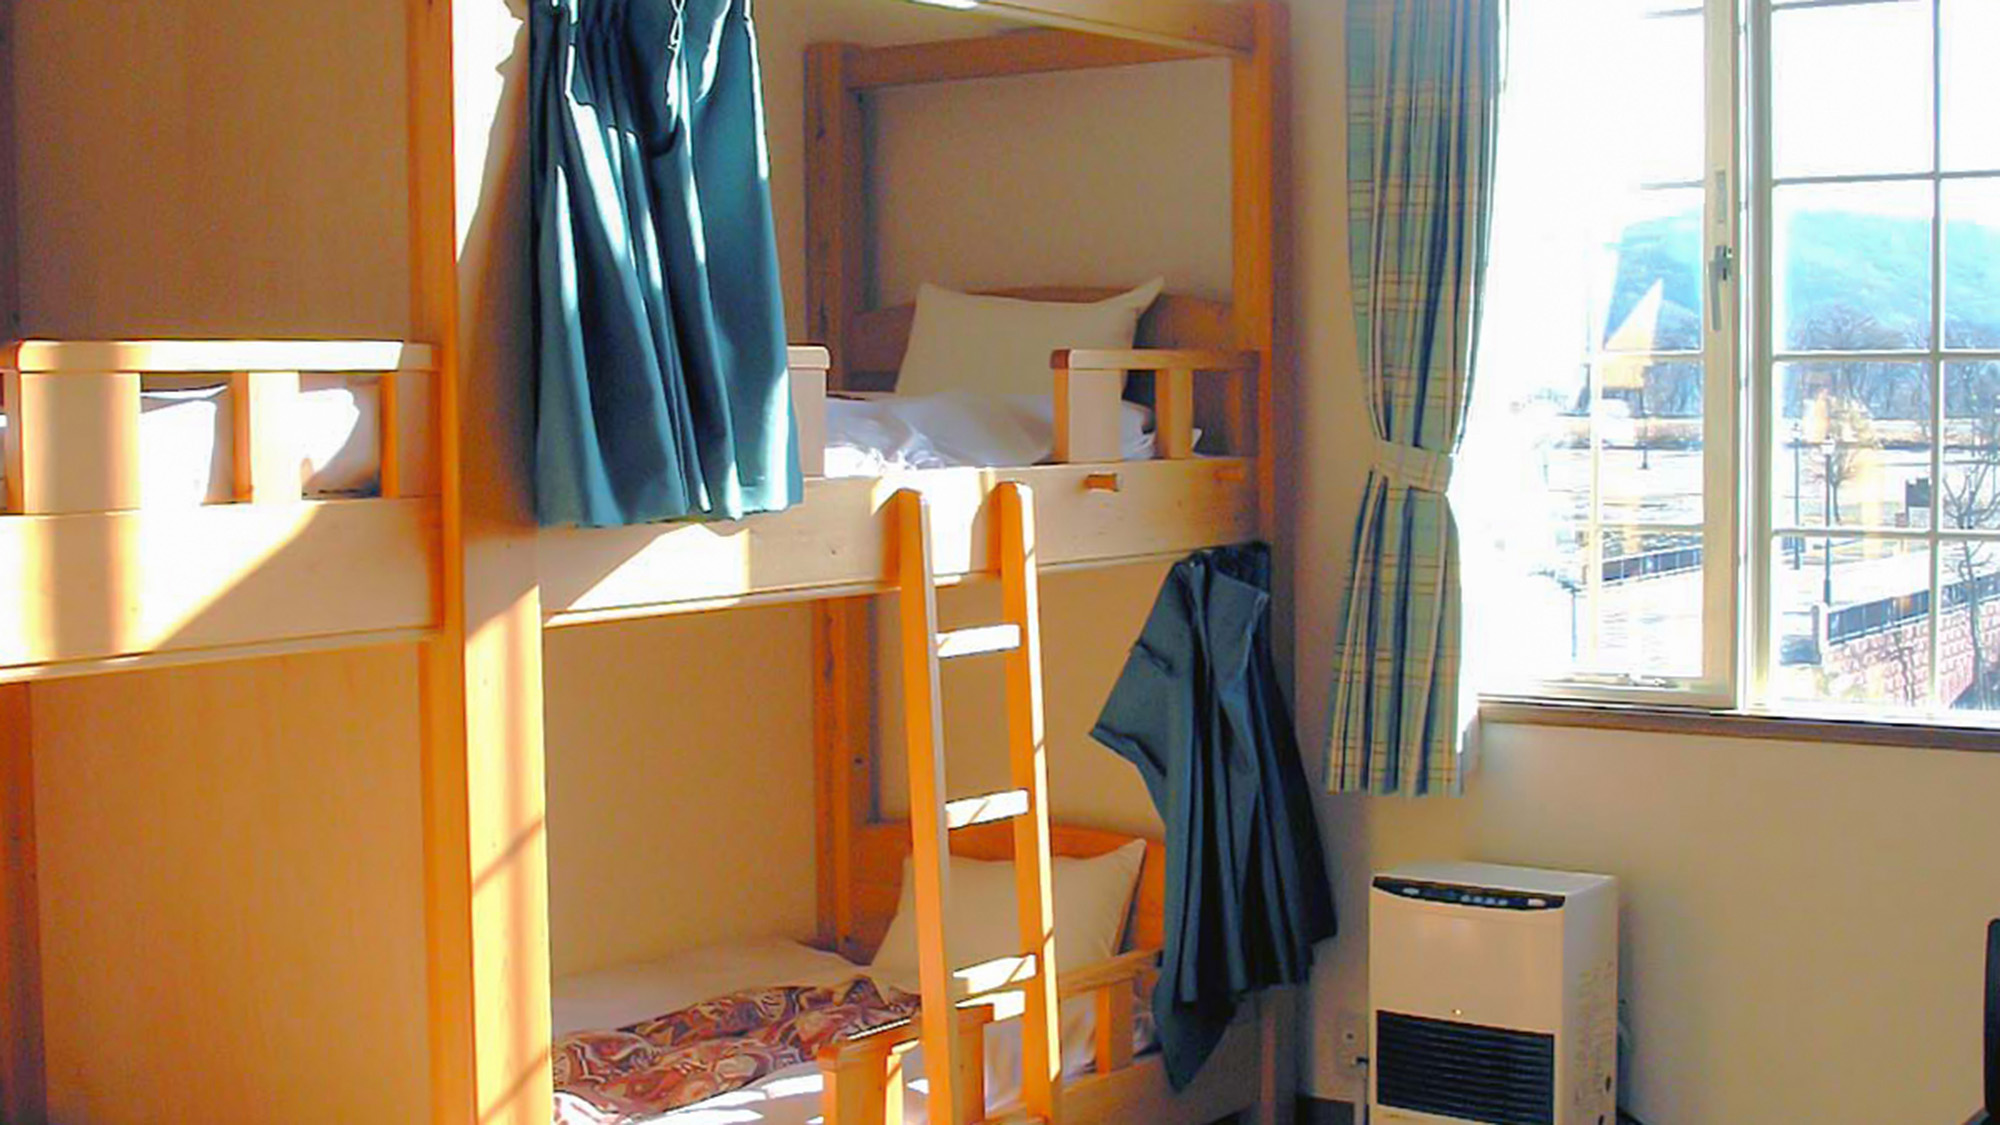 ・【団体宿泊棟・8名部屋】2段ベッドを4台設置。ワイワイ賑やかに過ごせます